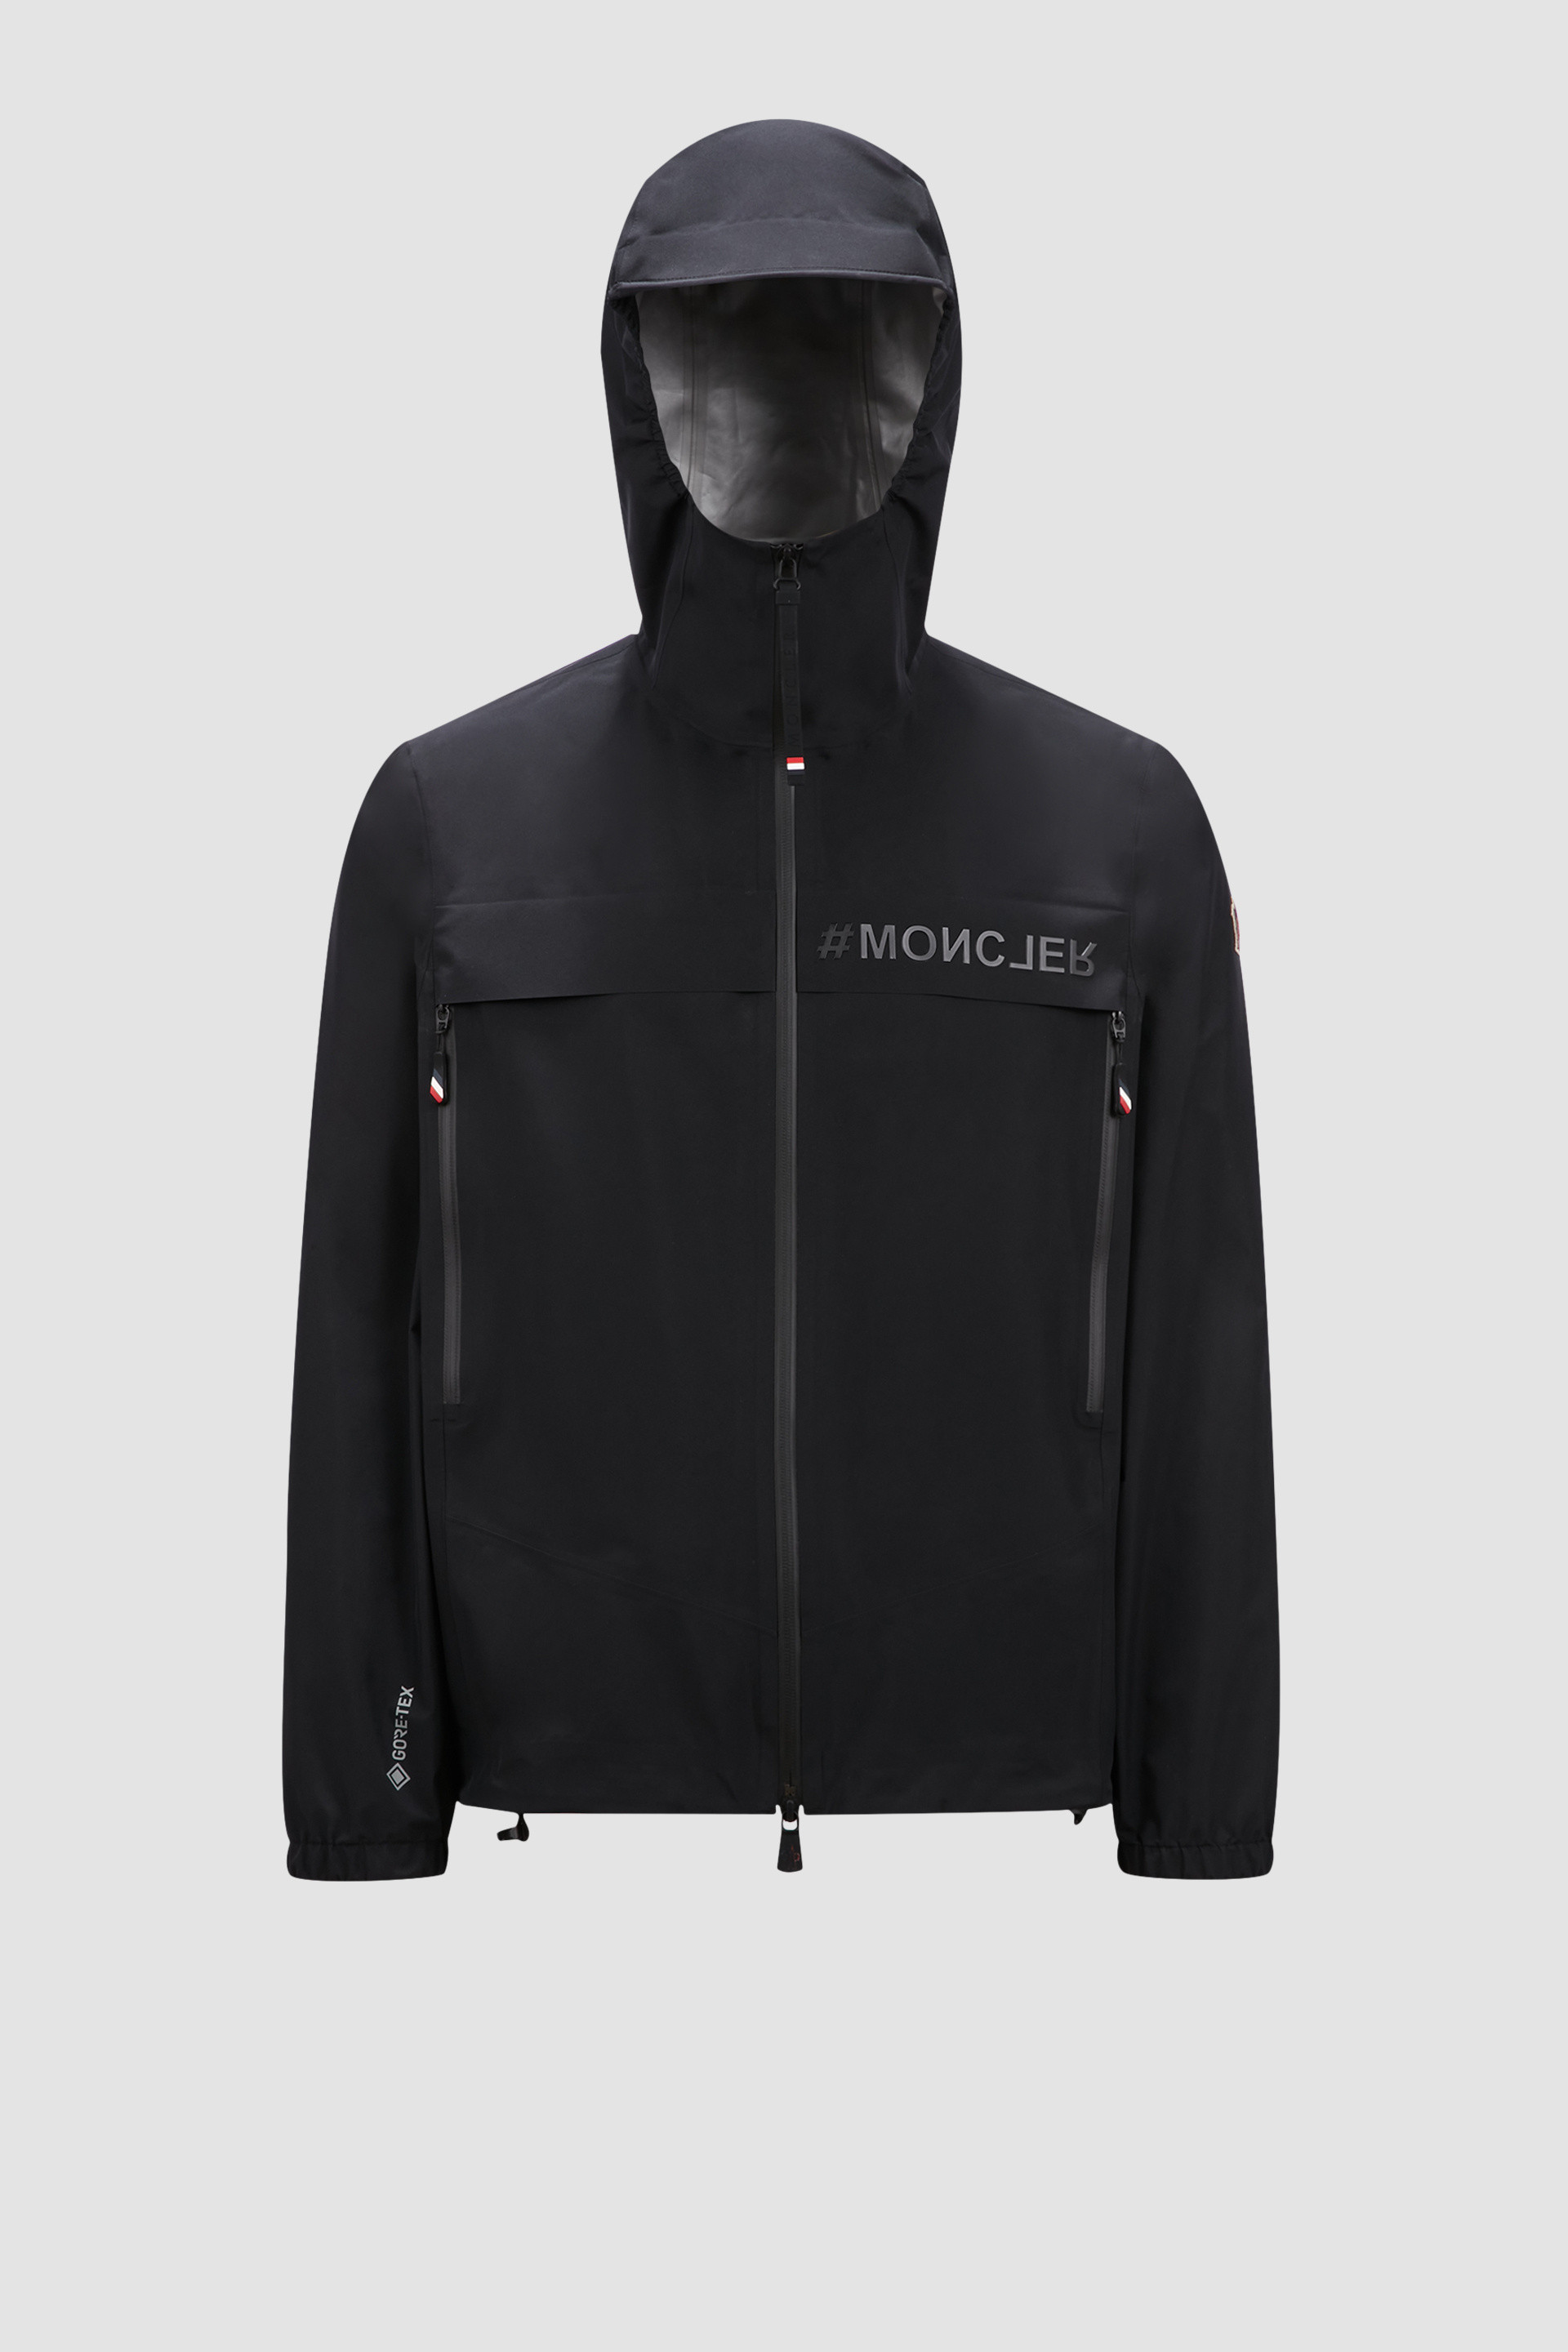 ブラック Shiptonジャケット : ウインドブレーカーとレインコート 向けの メンズ | モンクレール